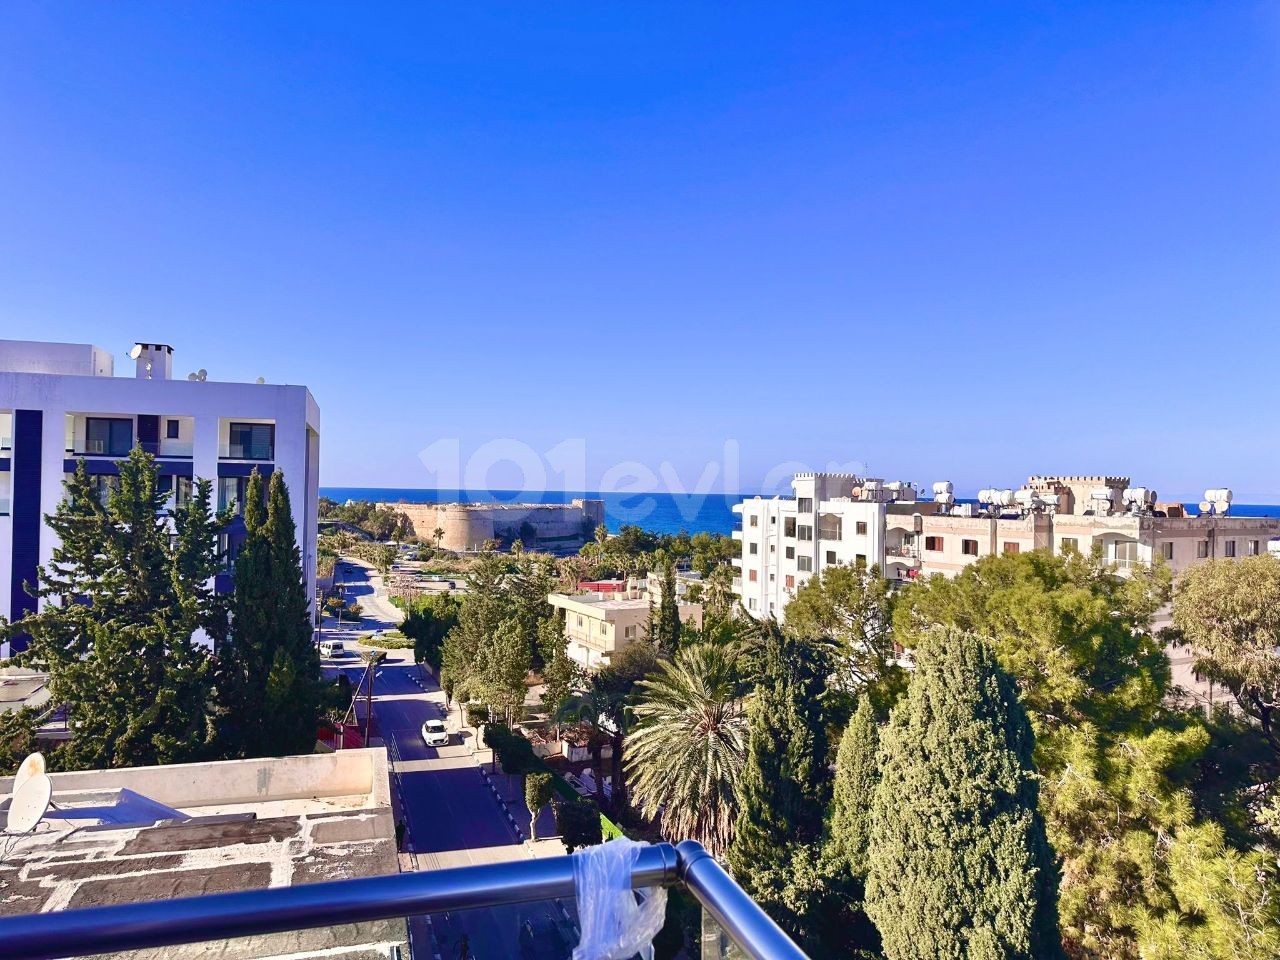 Ultraluxuriöse 3+1-Penthouse-Wohnung zur Miete in herrlicher Lage im Zentrum von Kyrenia, mit Blick auf das Meer und die Burg, nur wenige Gehminuten vom Markt entfernt